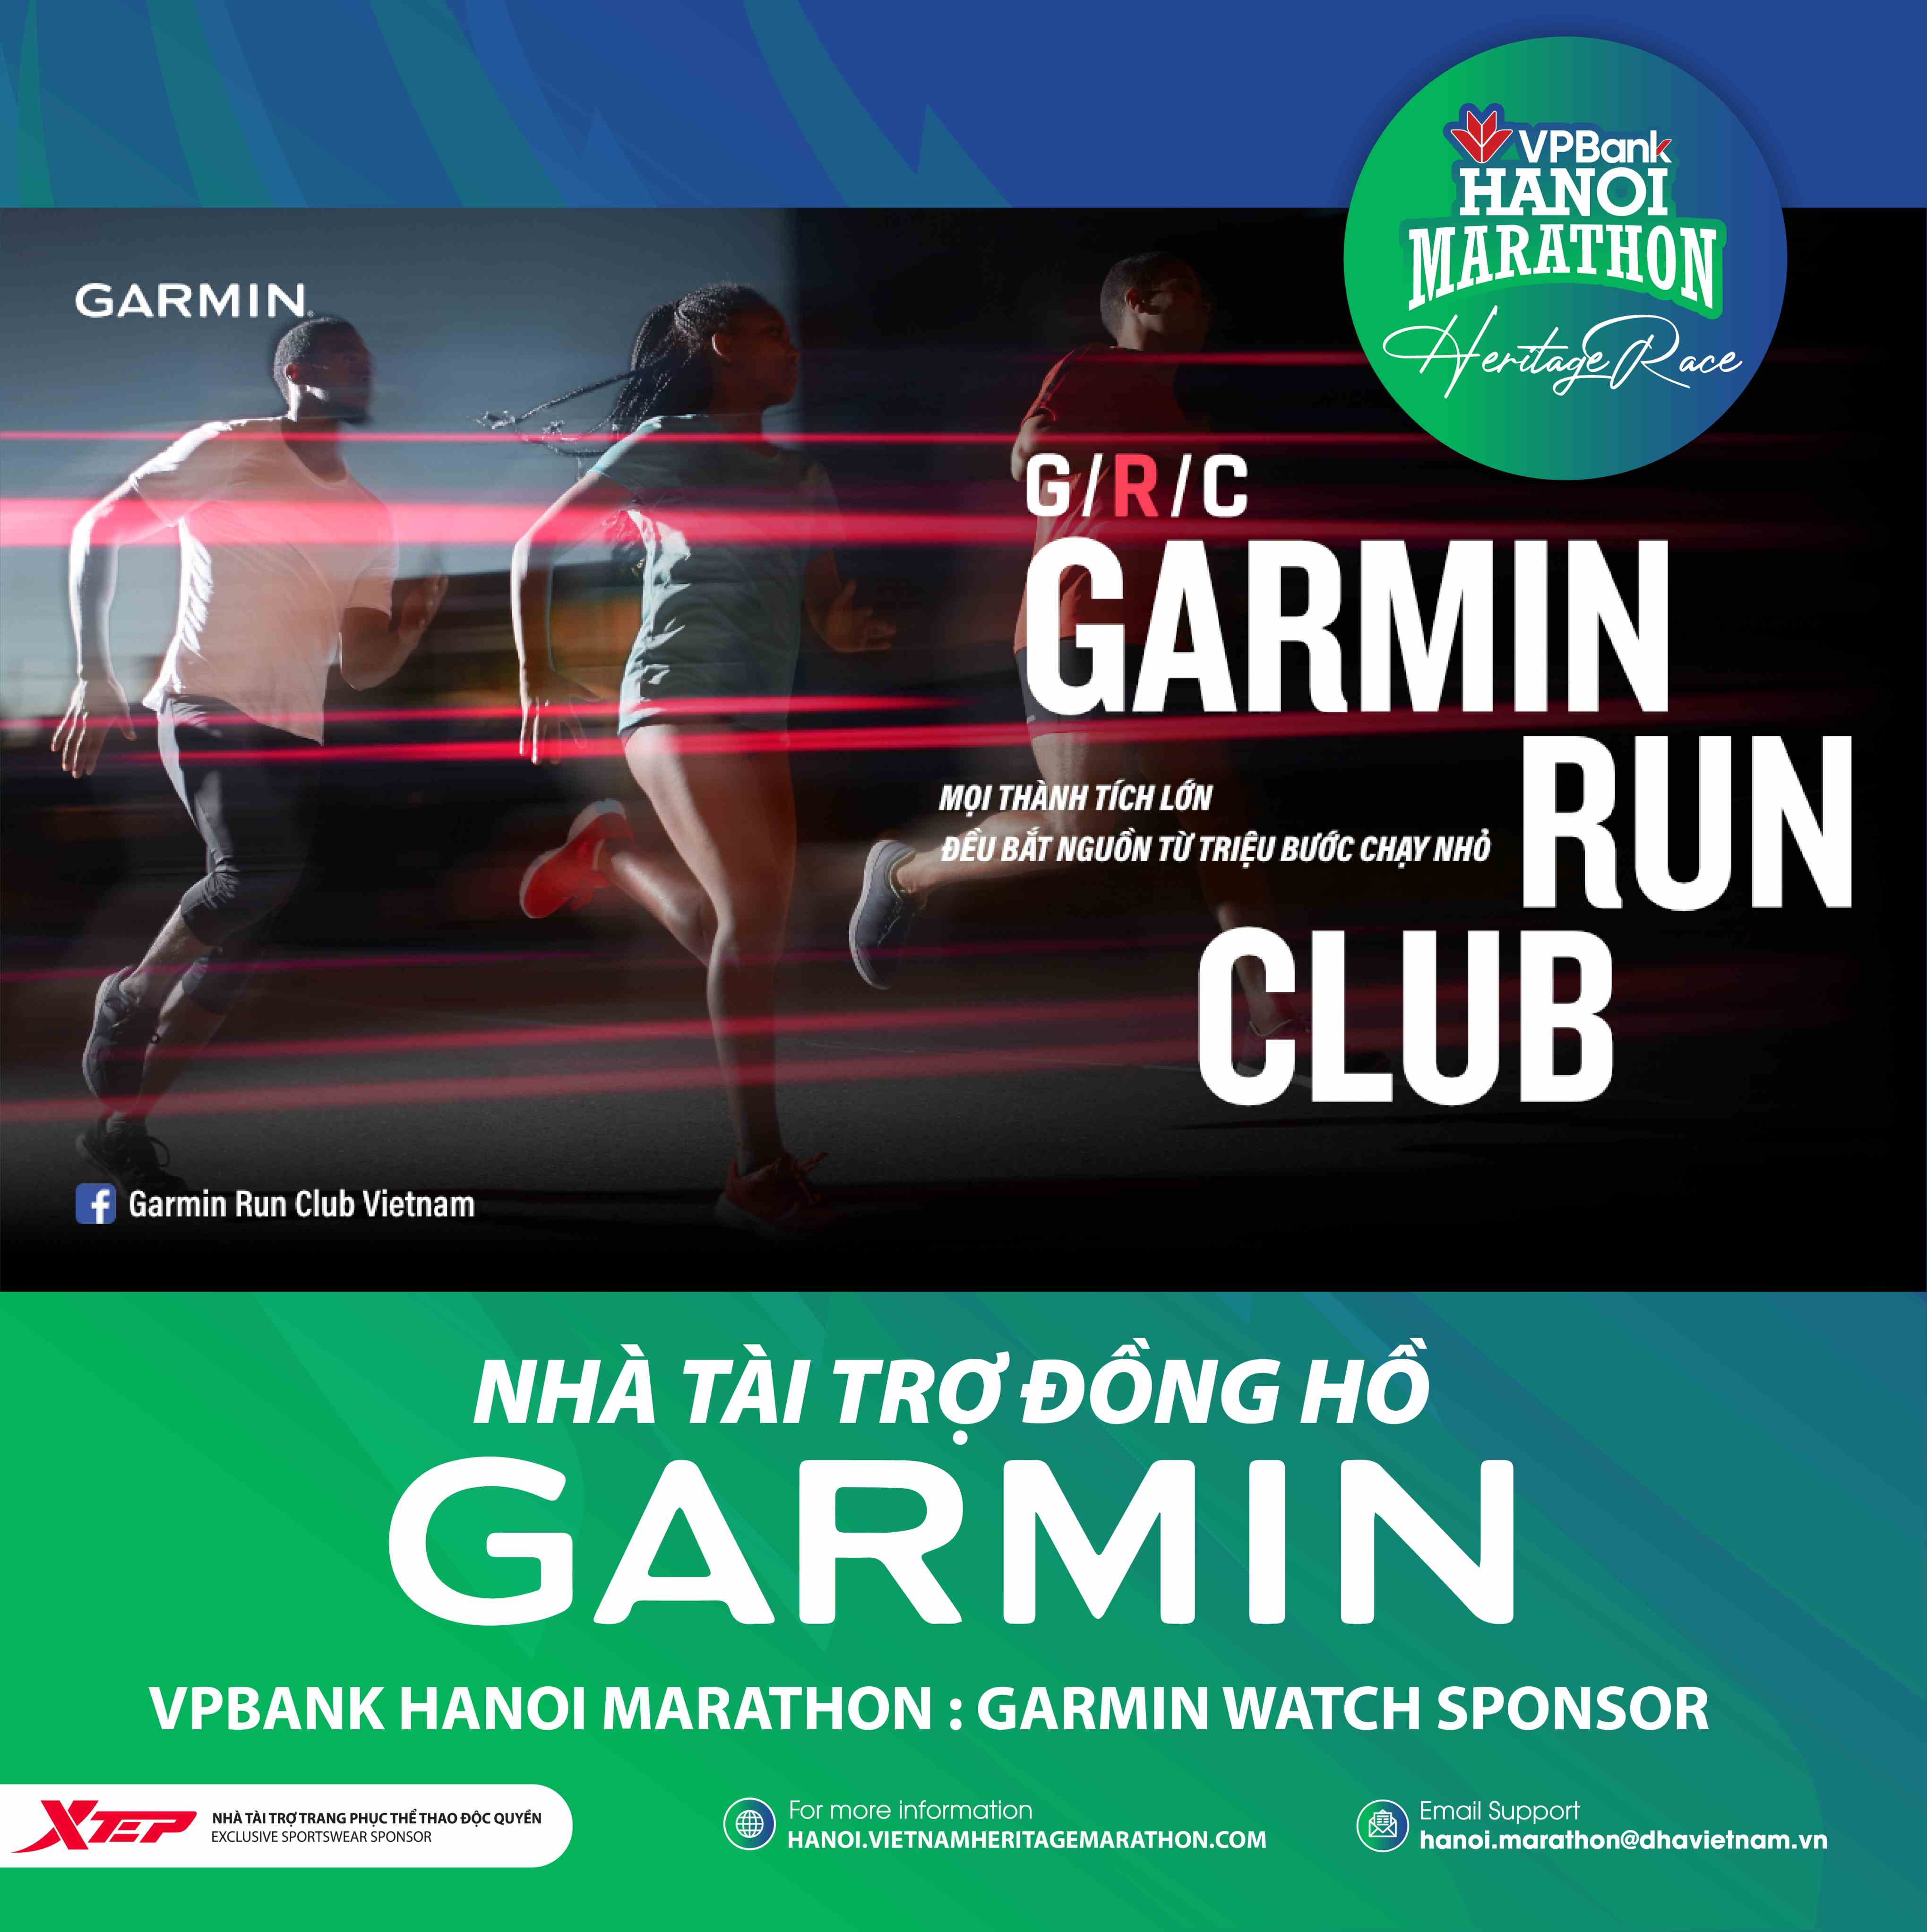 Đồng Hồ Garmin Có Trong Giải Thưởng Tại VPBank Hanoi Marathon 2021